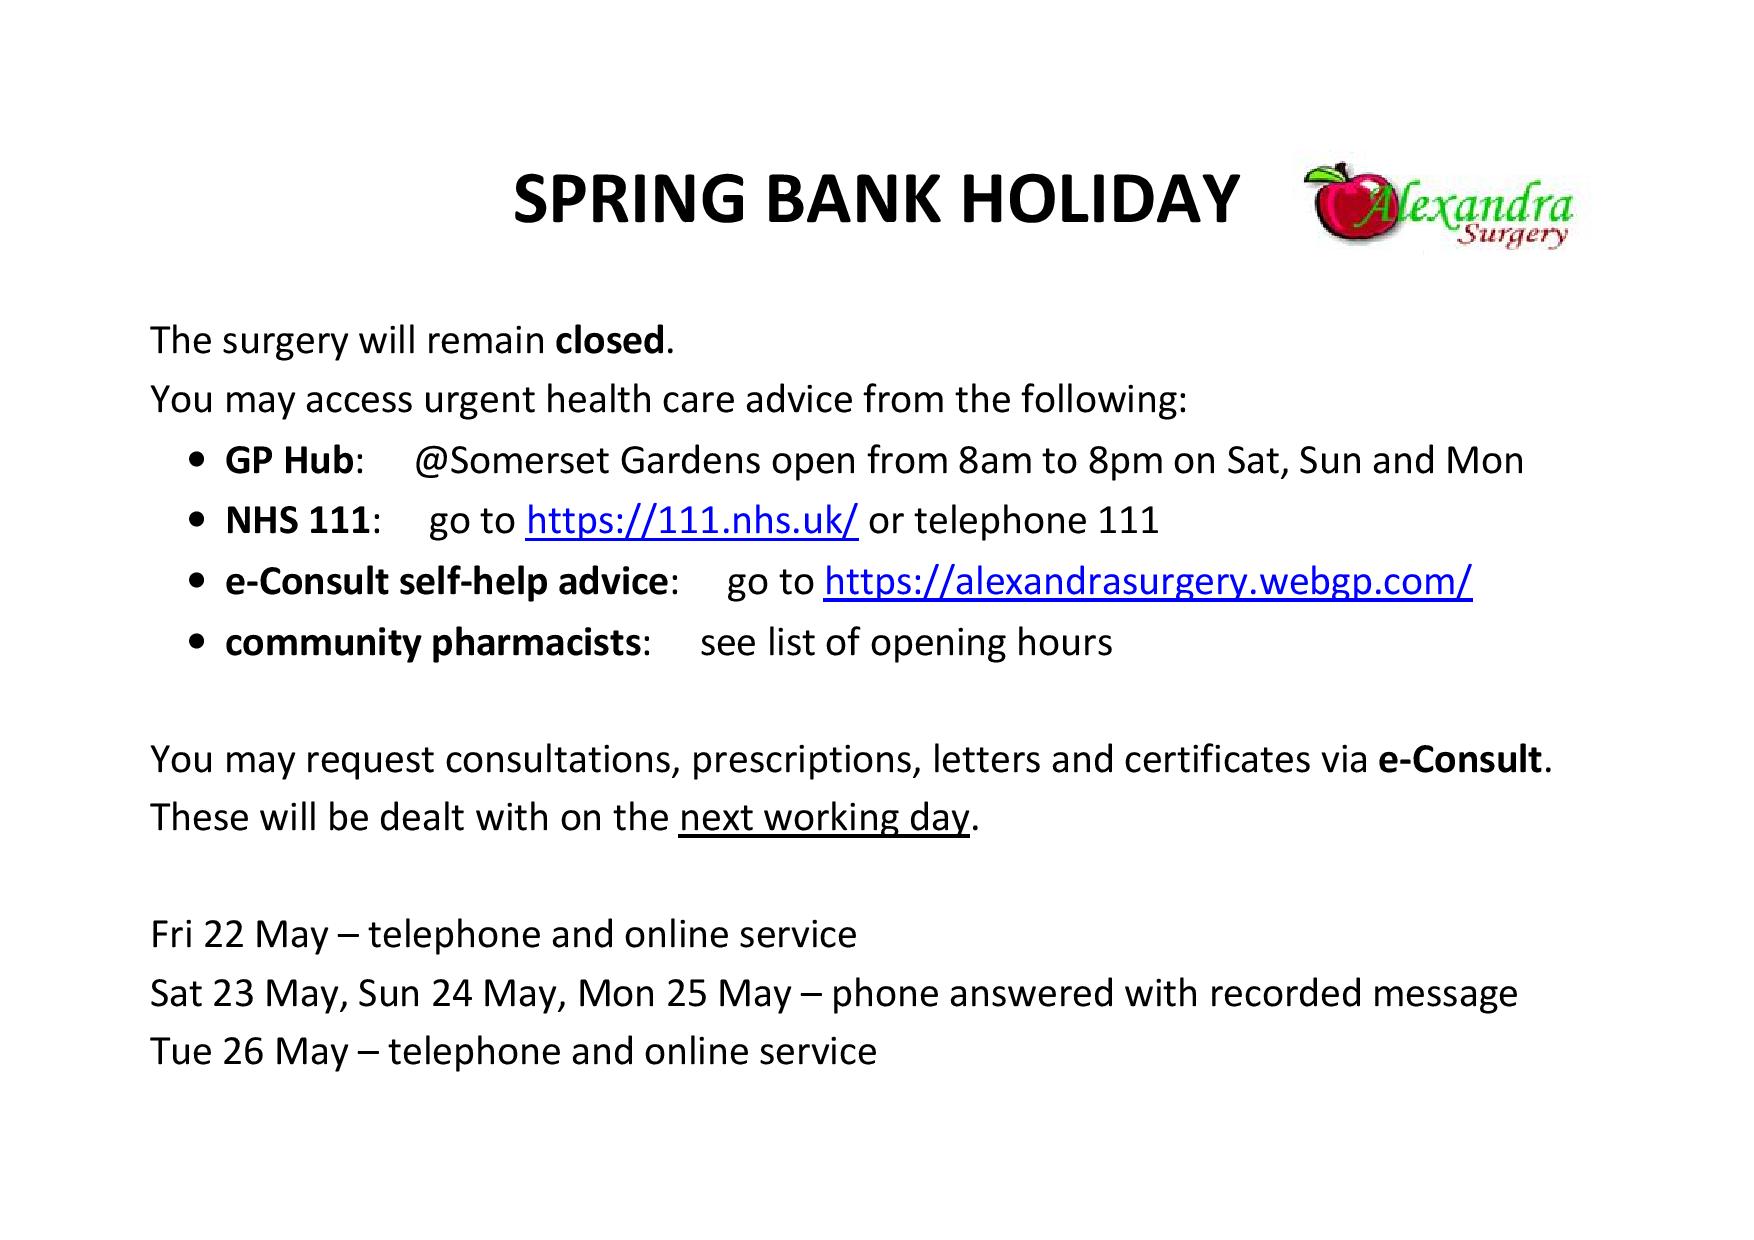 Spring bank holiday 2020 closed